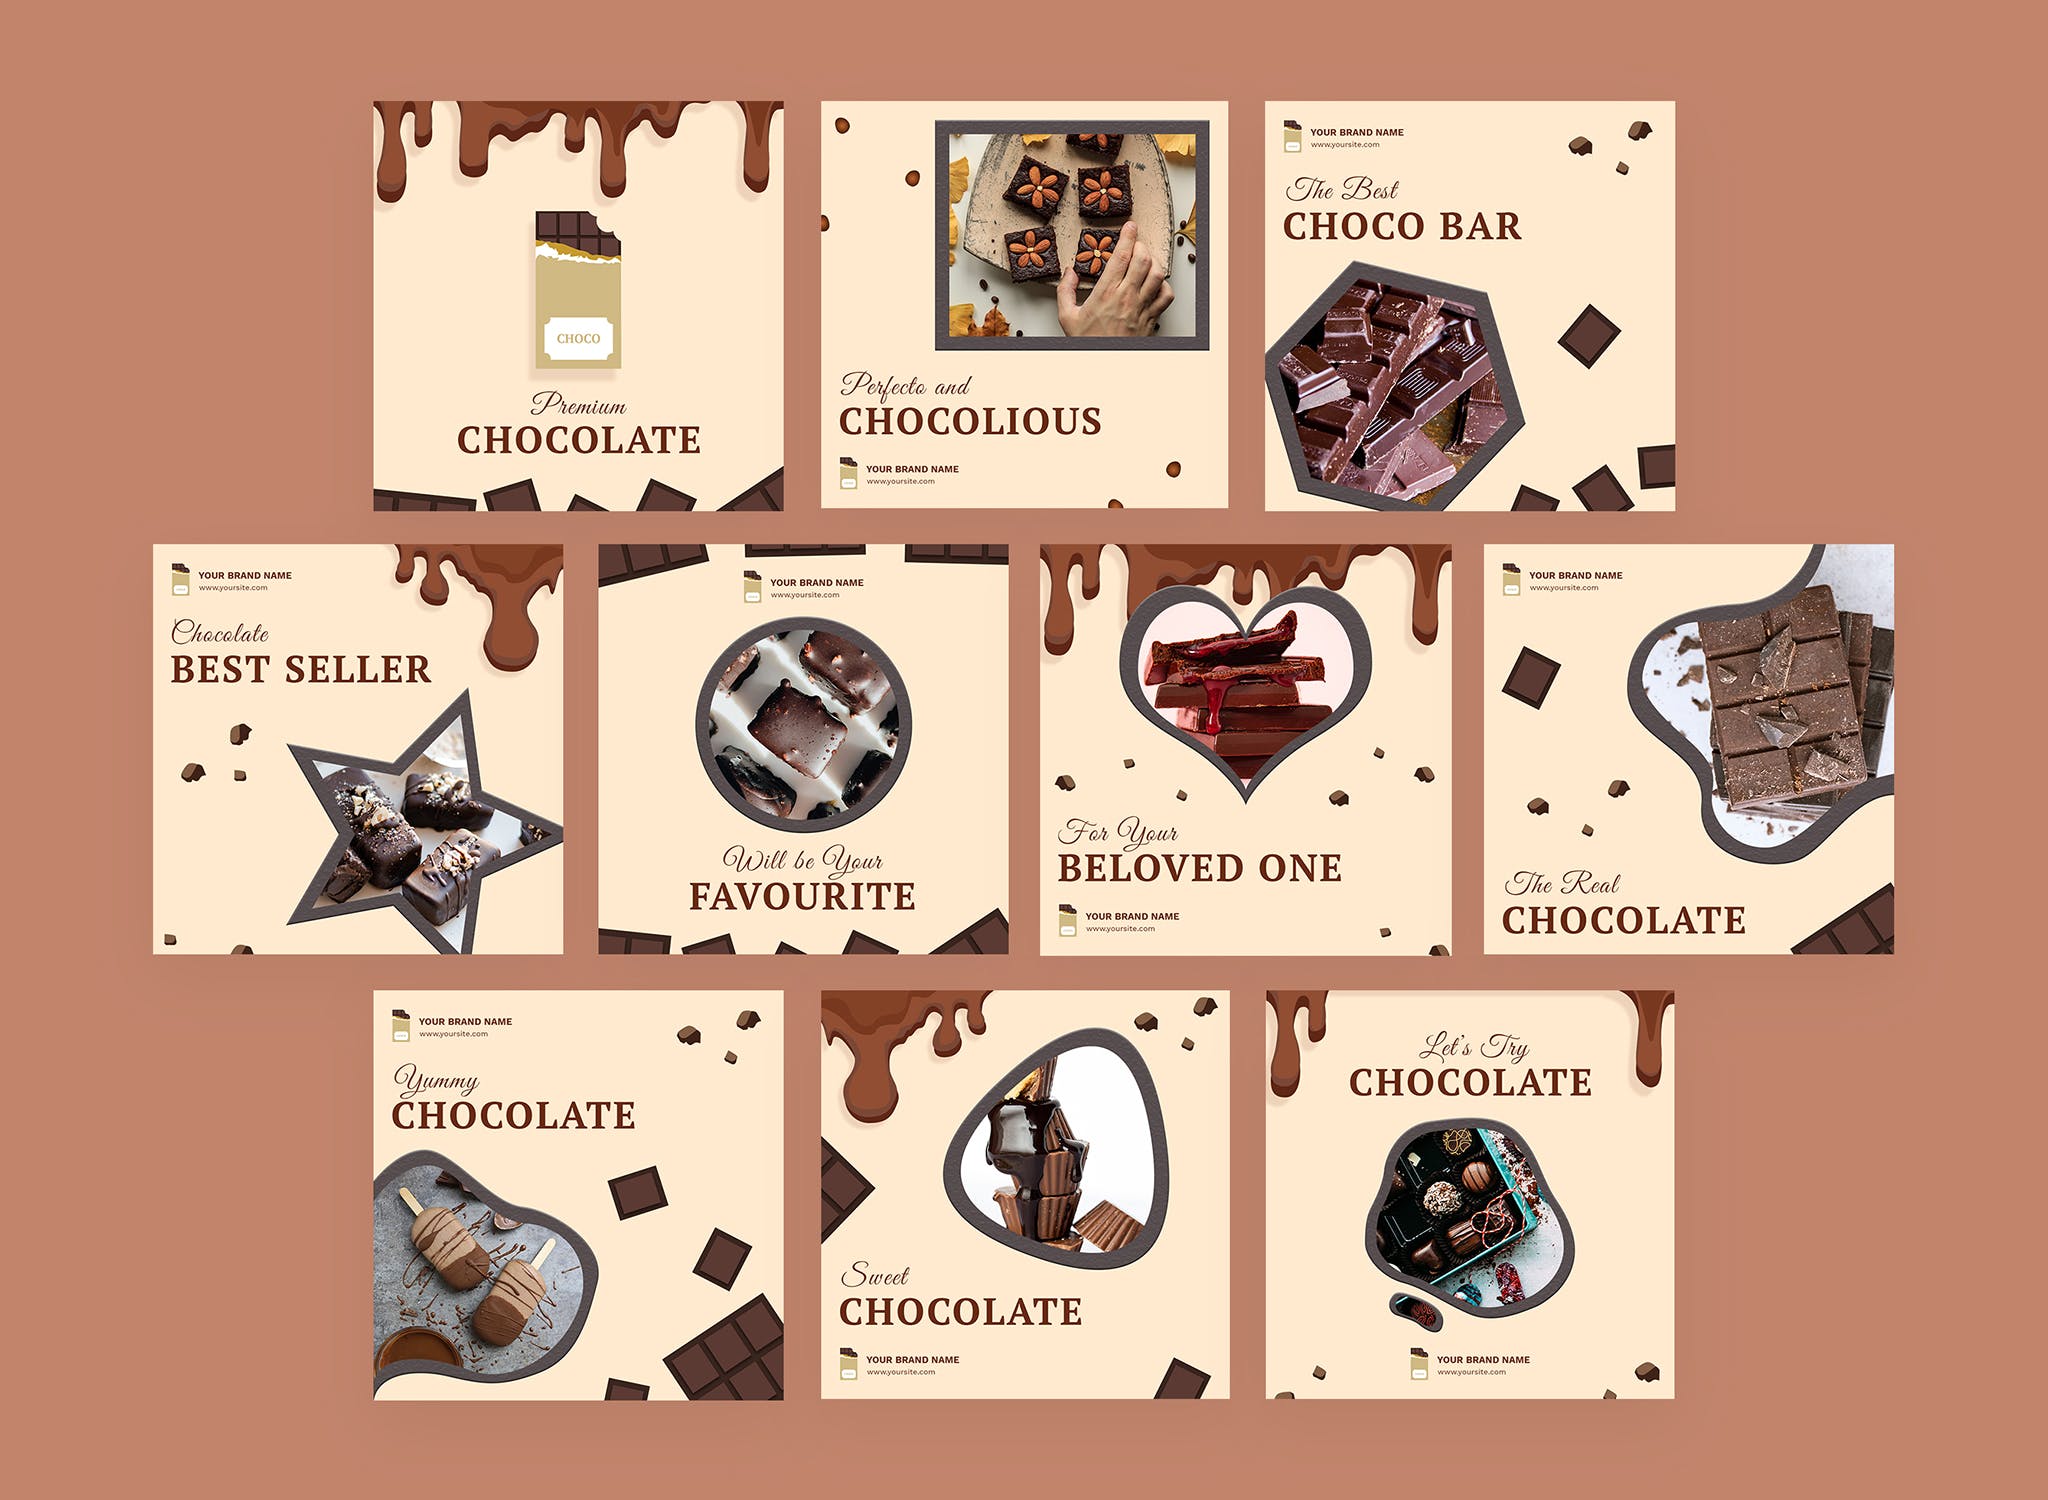 巧克力品牌营销Instagram社交信息流广告模板16图库精选 Cioccolato – Instagram Feeds Pack插图(1)